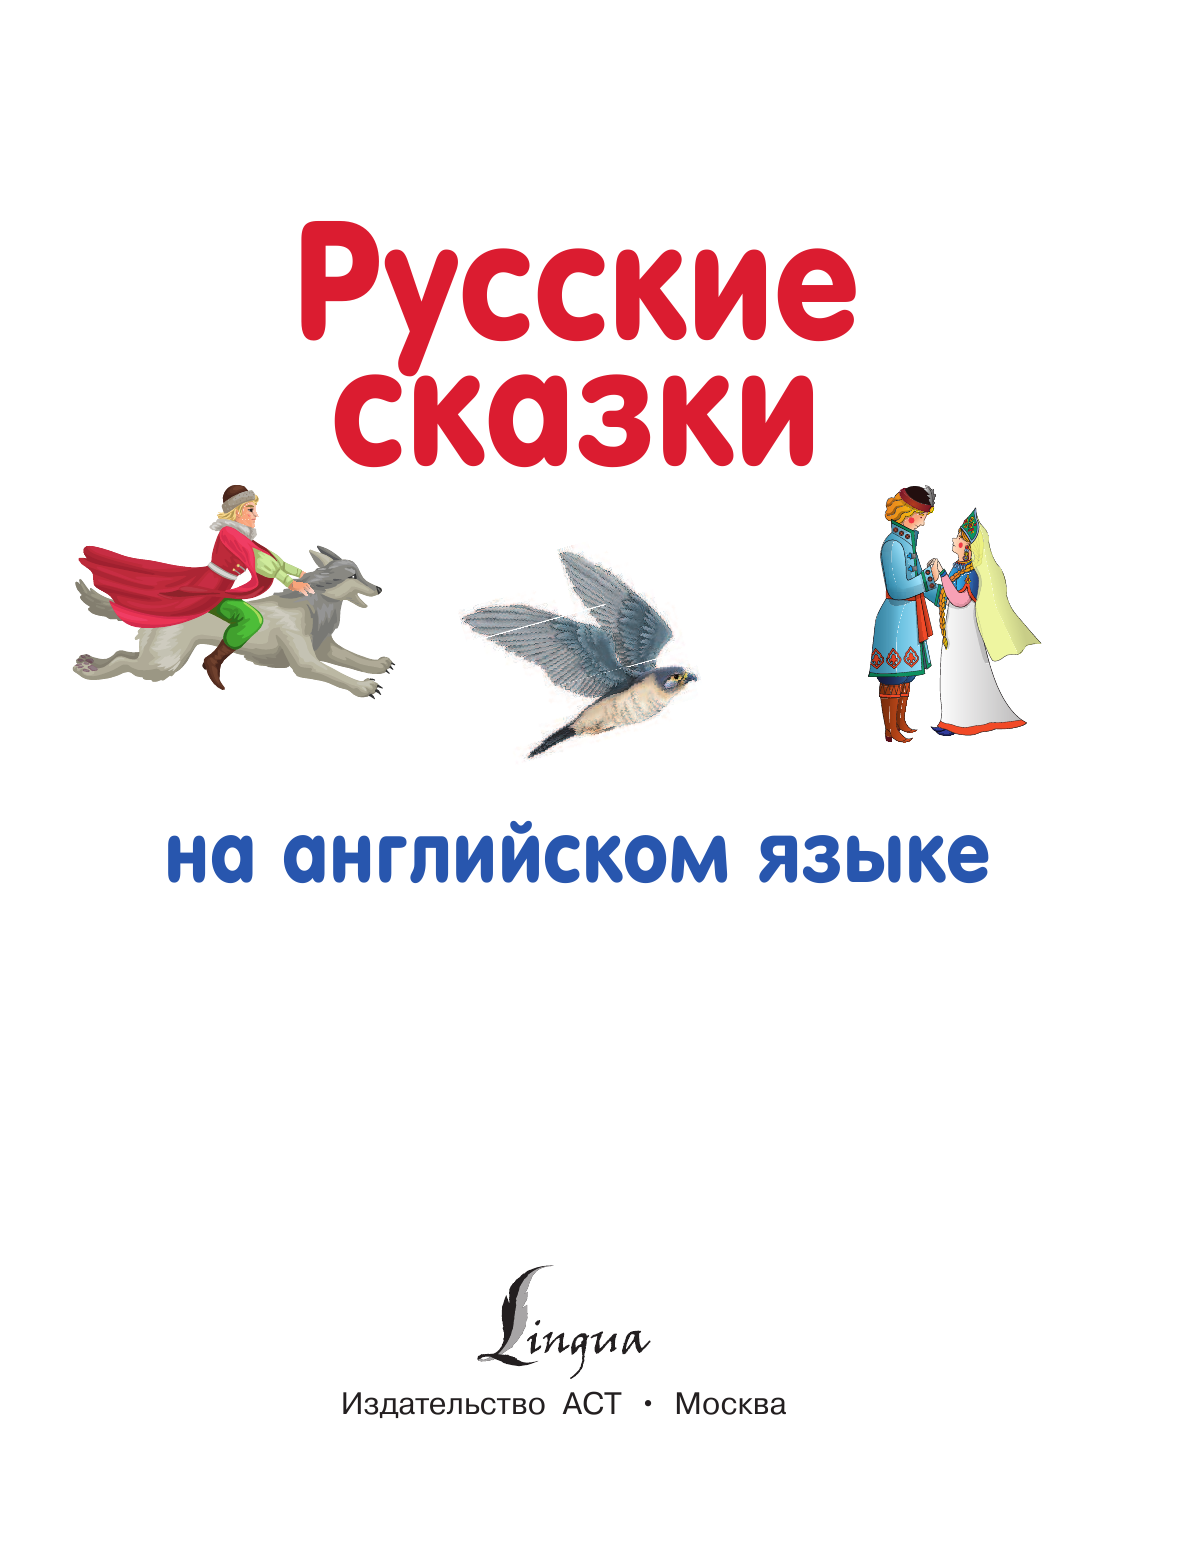  Русские сказки на английском языке - страница 2